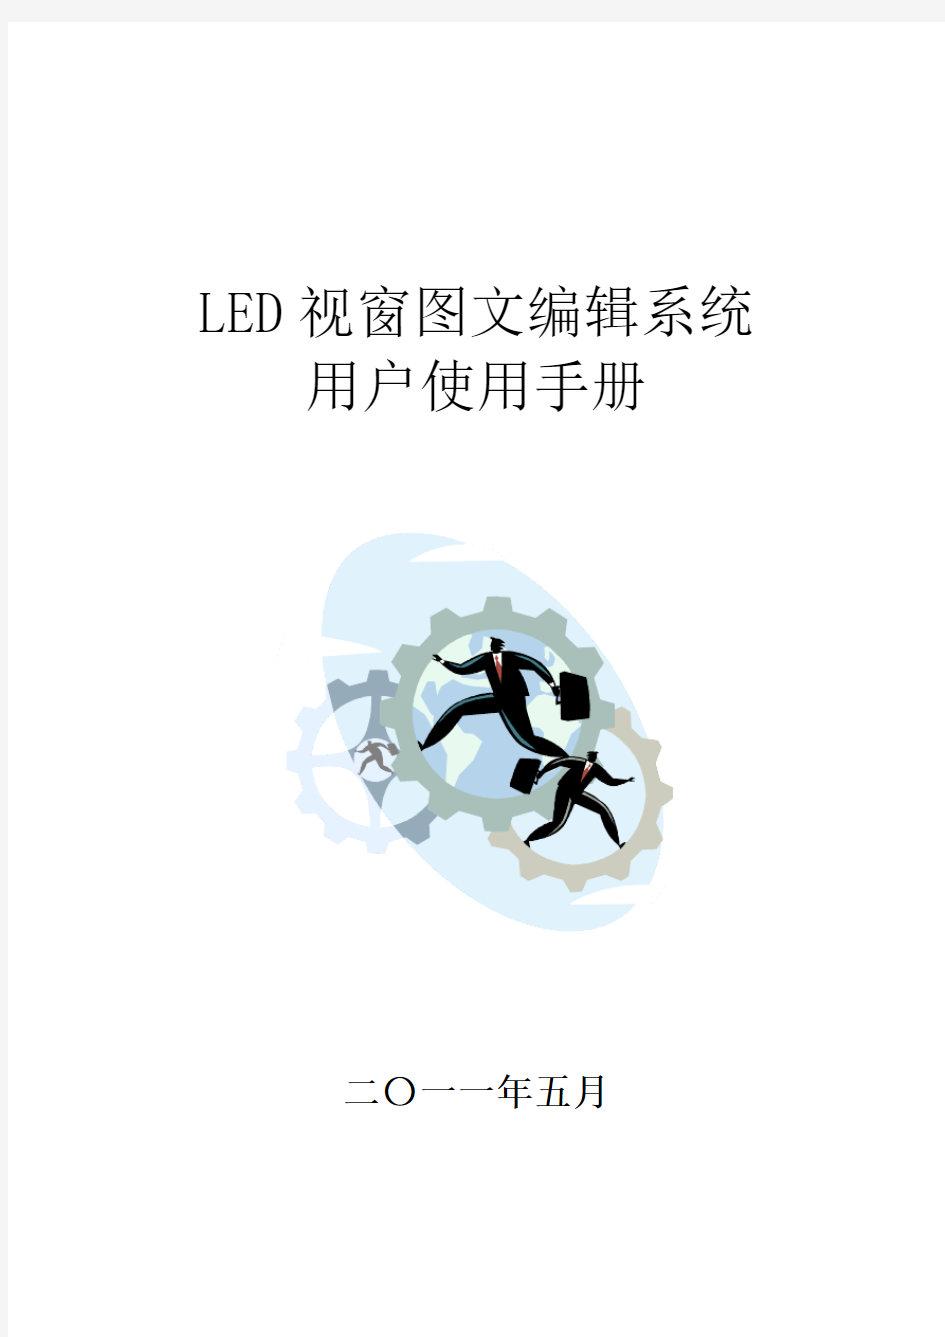 LED视窗2011用户操作手册